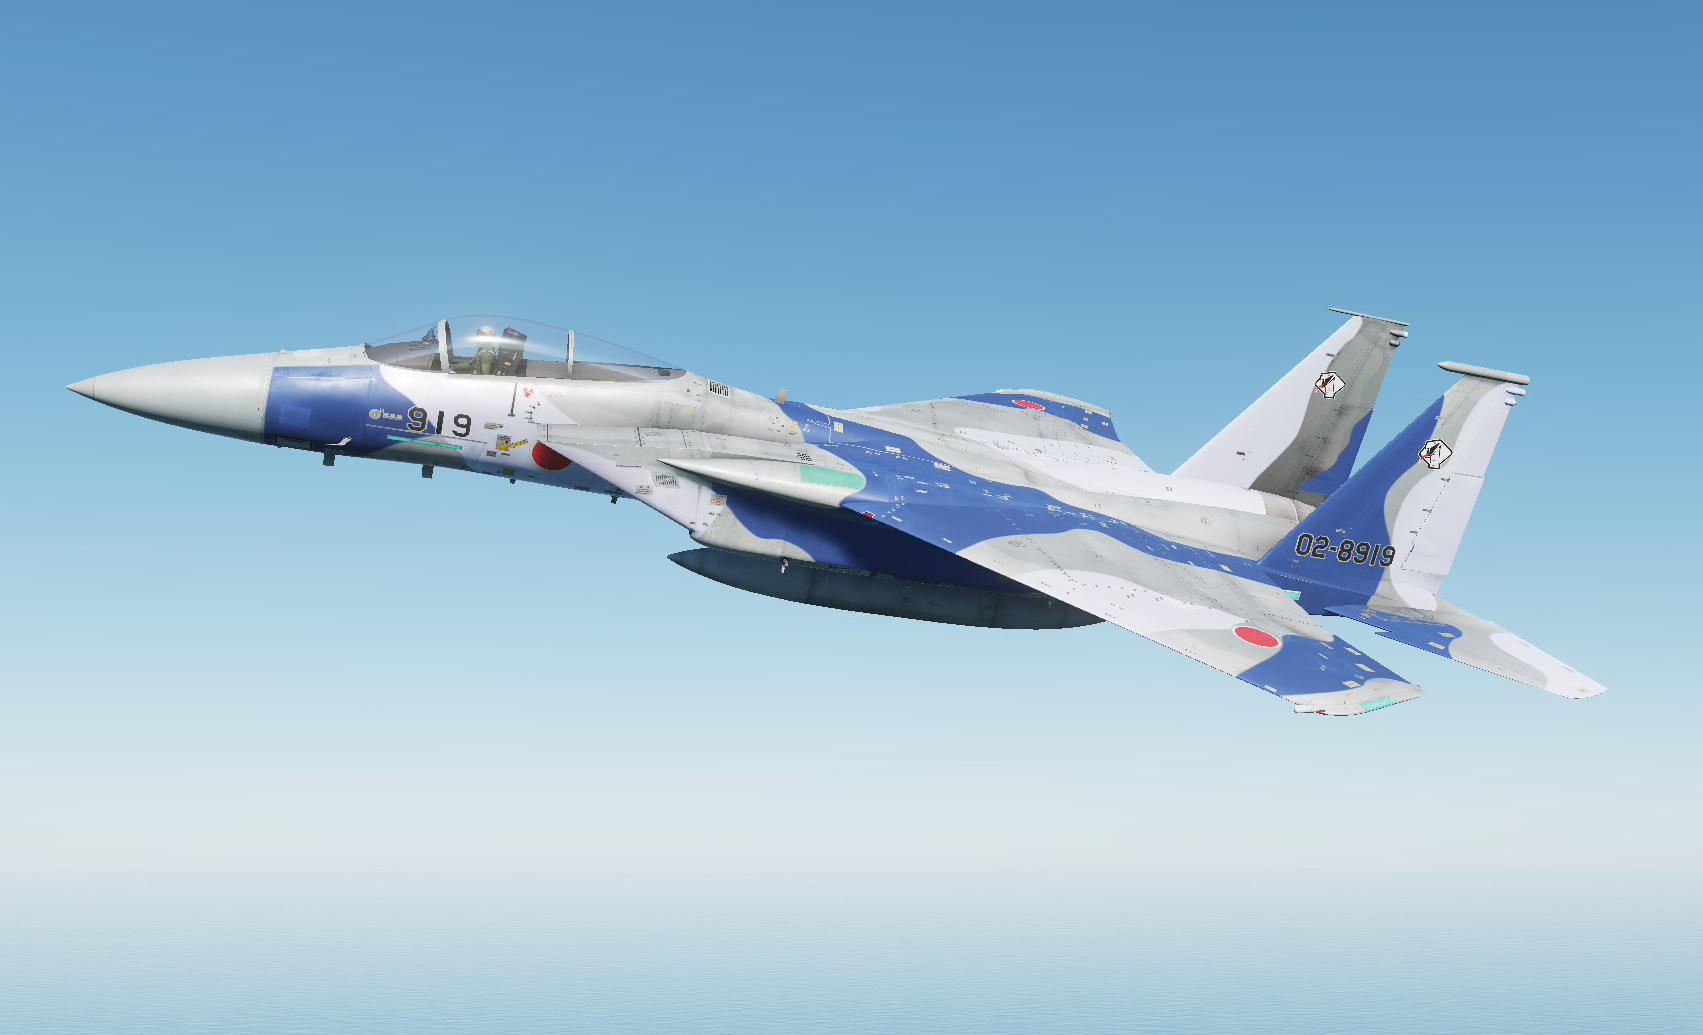 JASDF F-15J AGGRESSOR 02-8919 Flanker Skin